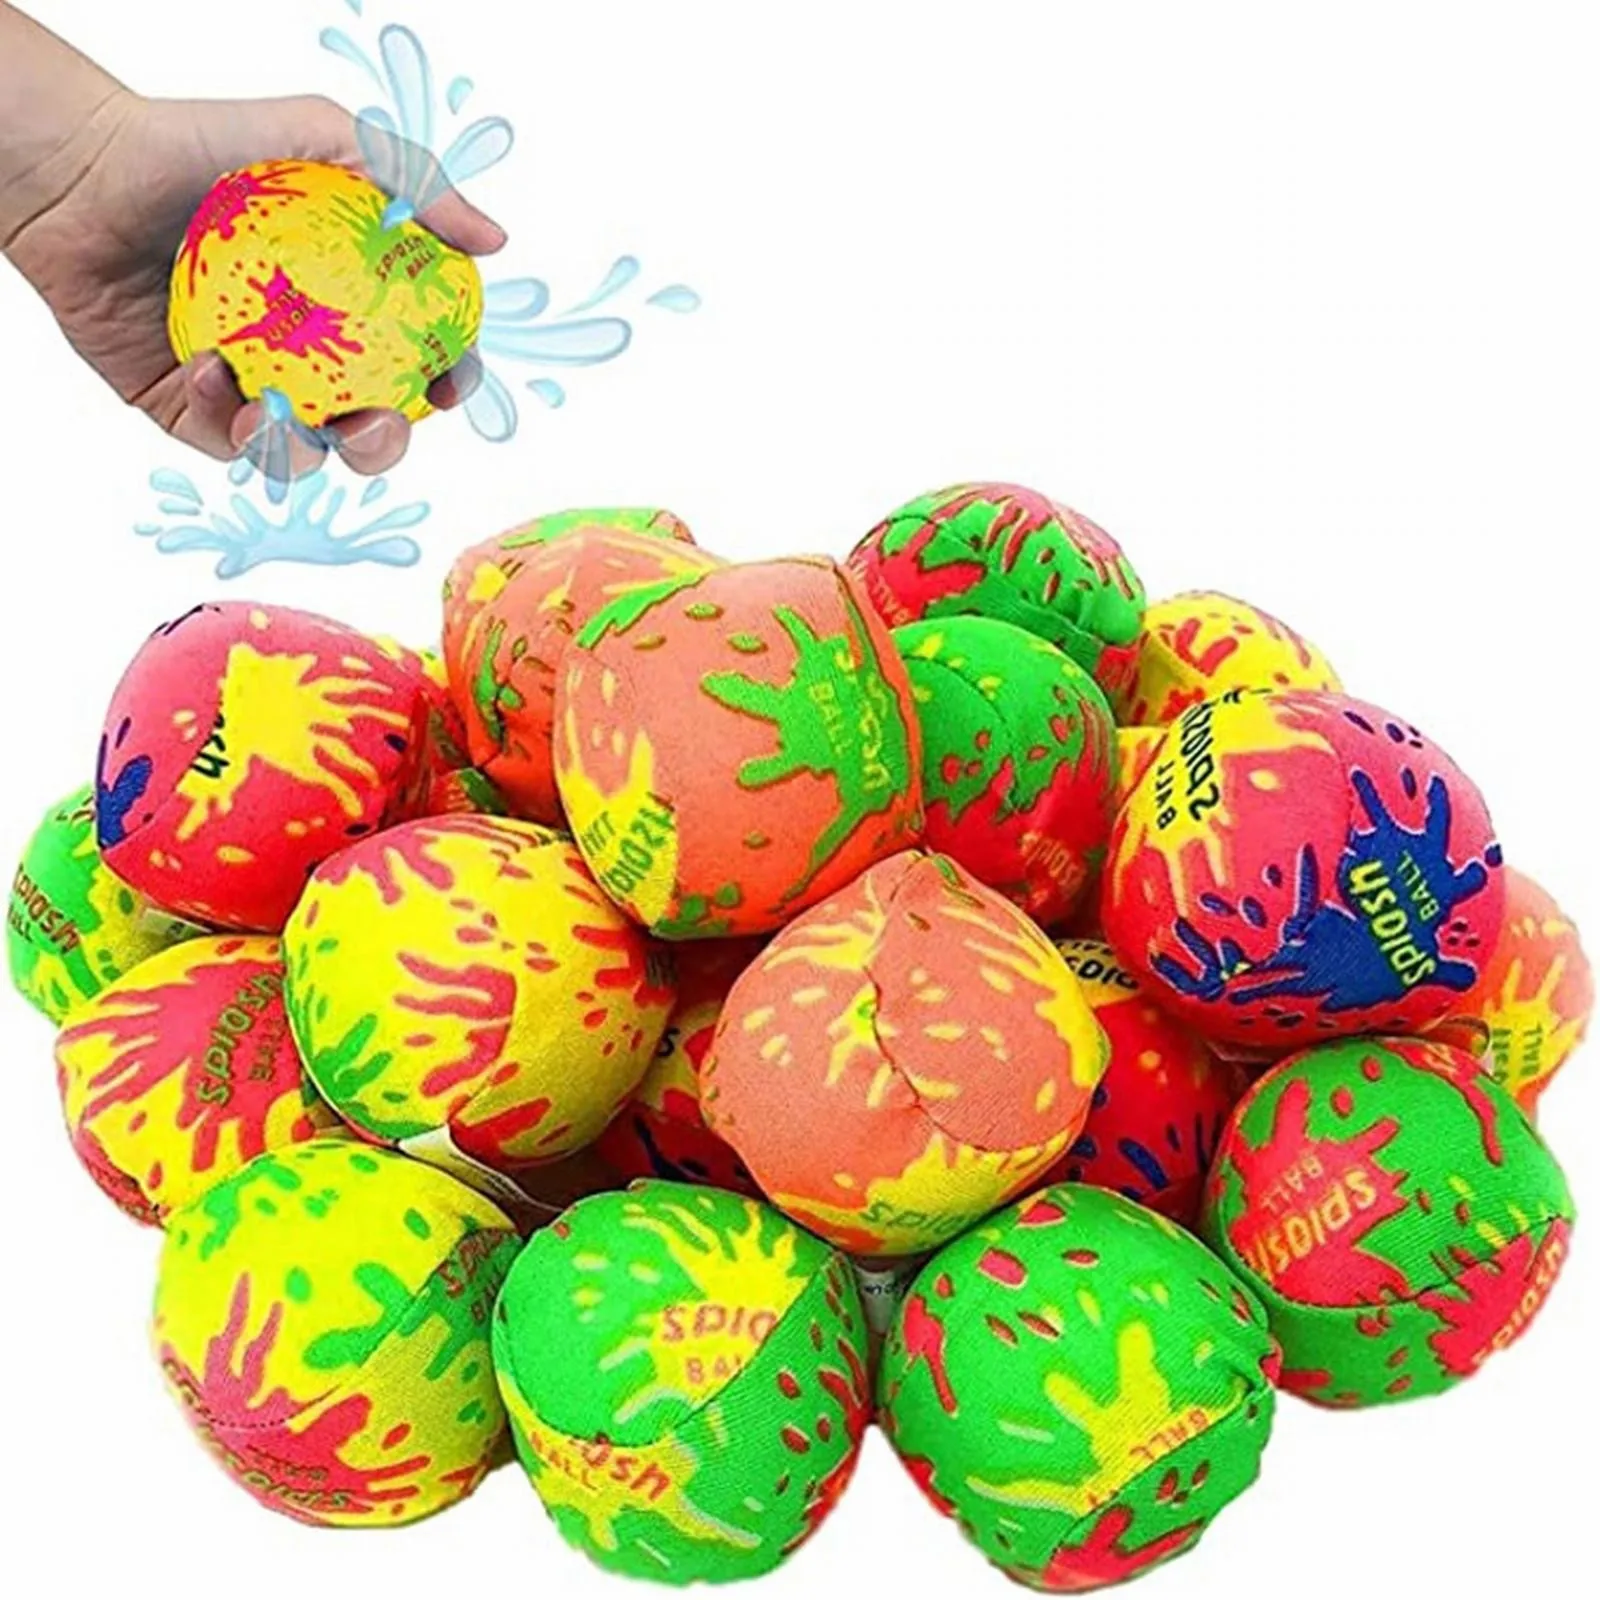 5pc Reusable Water Balls Water Toys Beach Balls Absorbent Cotton Balls Cott - £8.93 GBP+